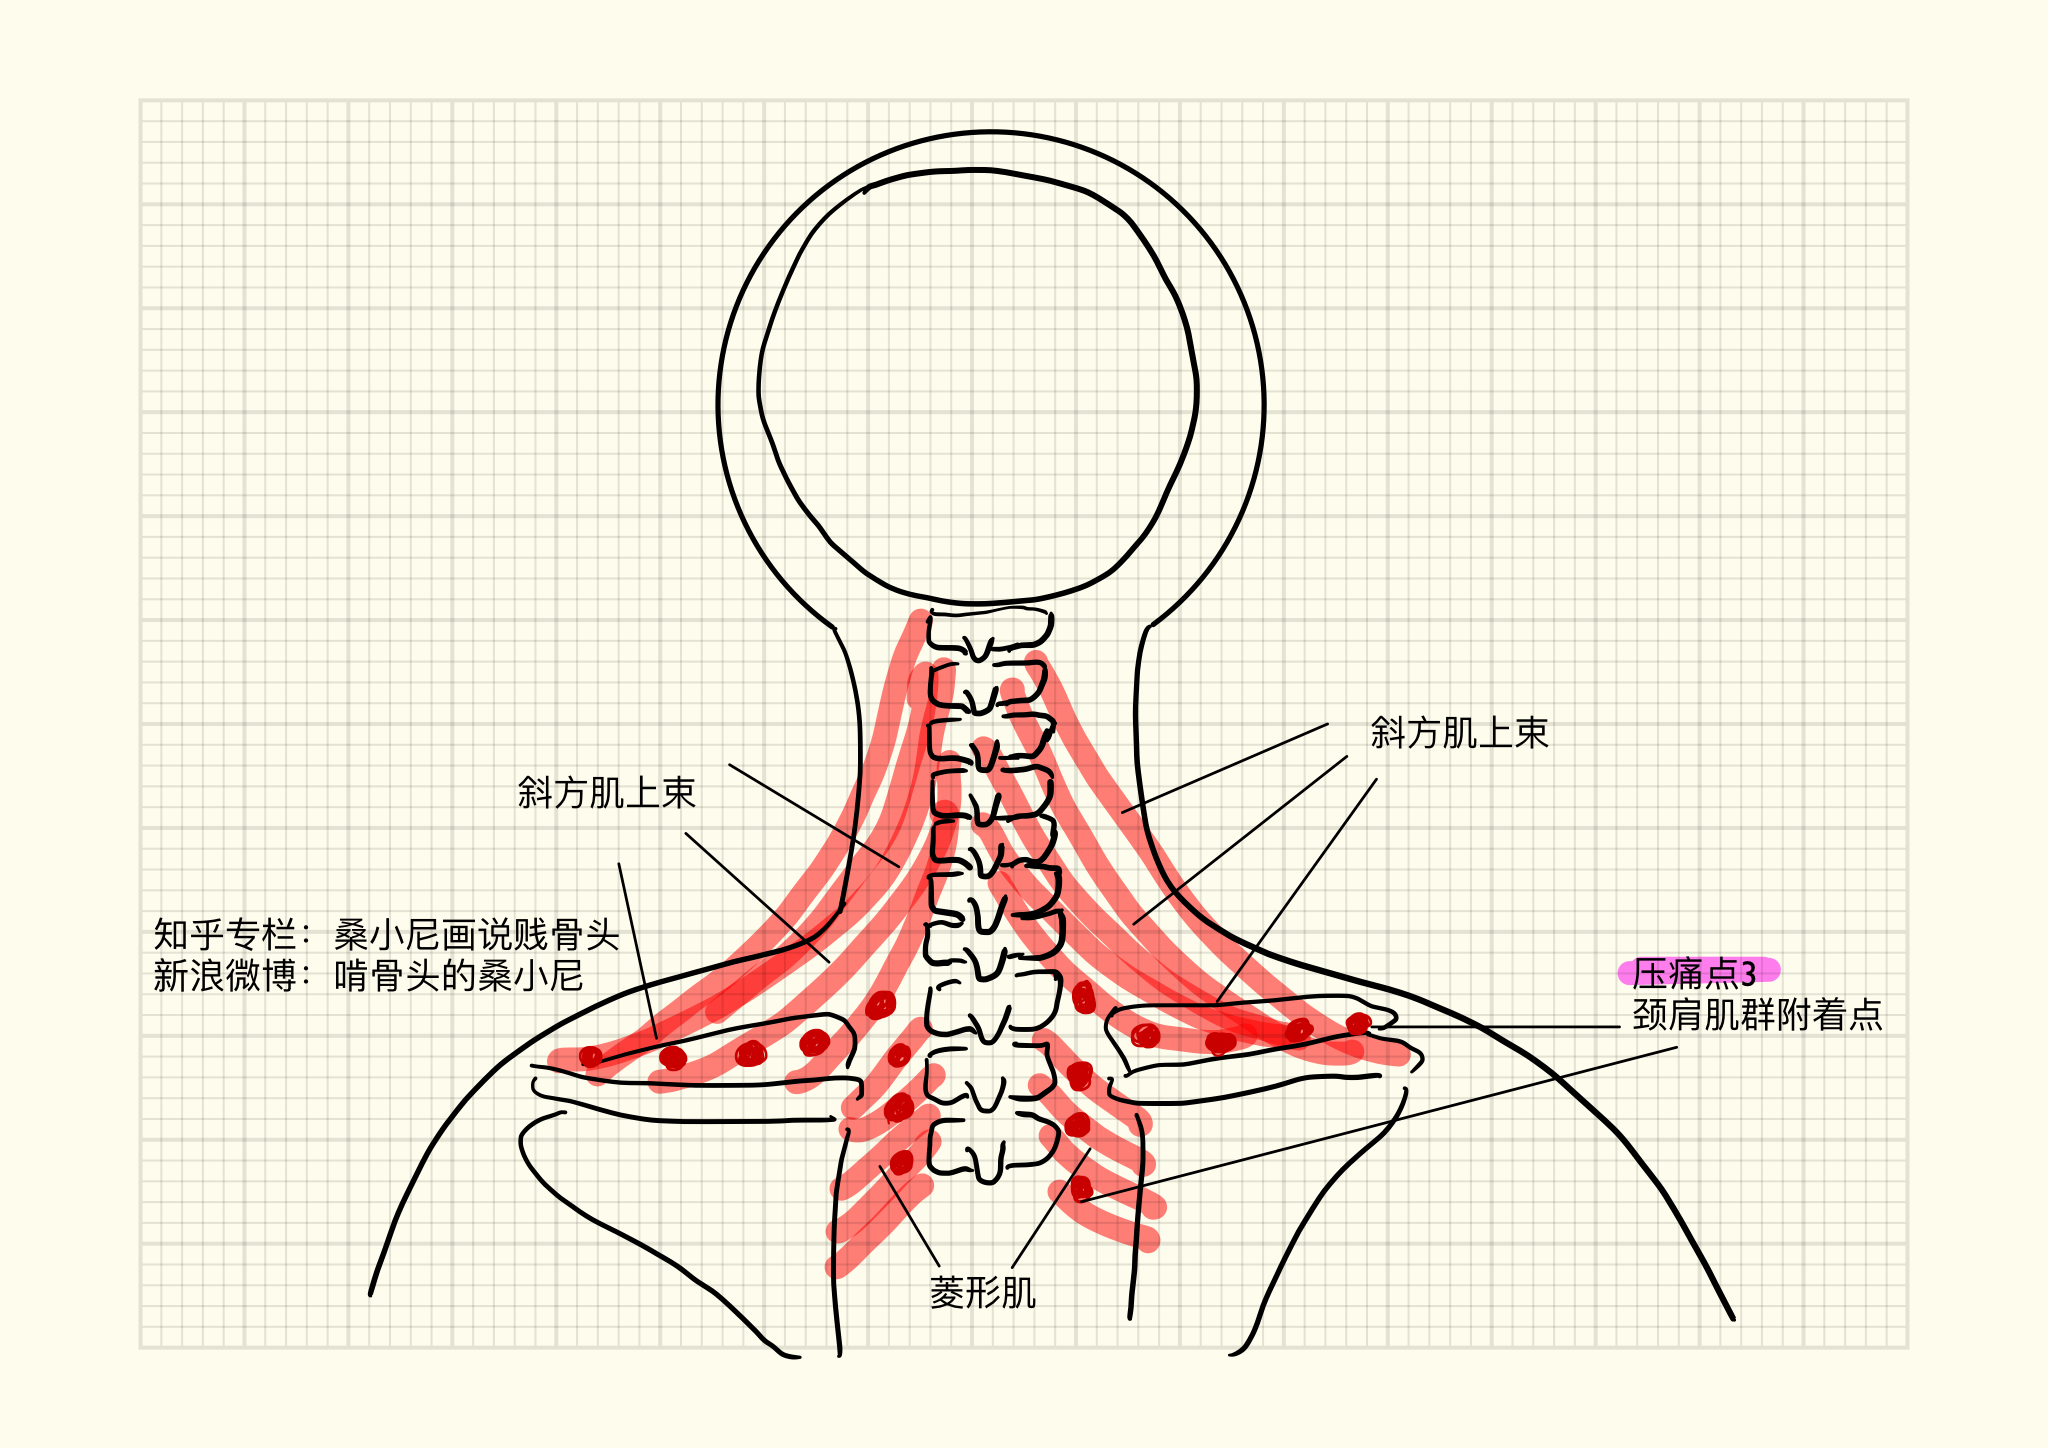 图7-32 锁骨和胸锁关节-基础医学-医学